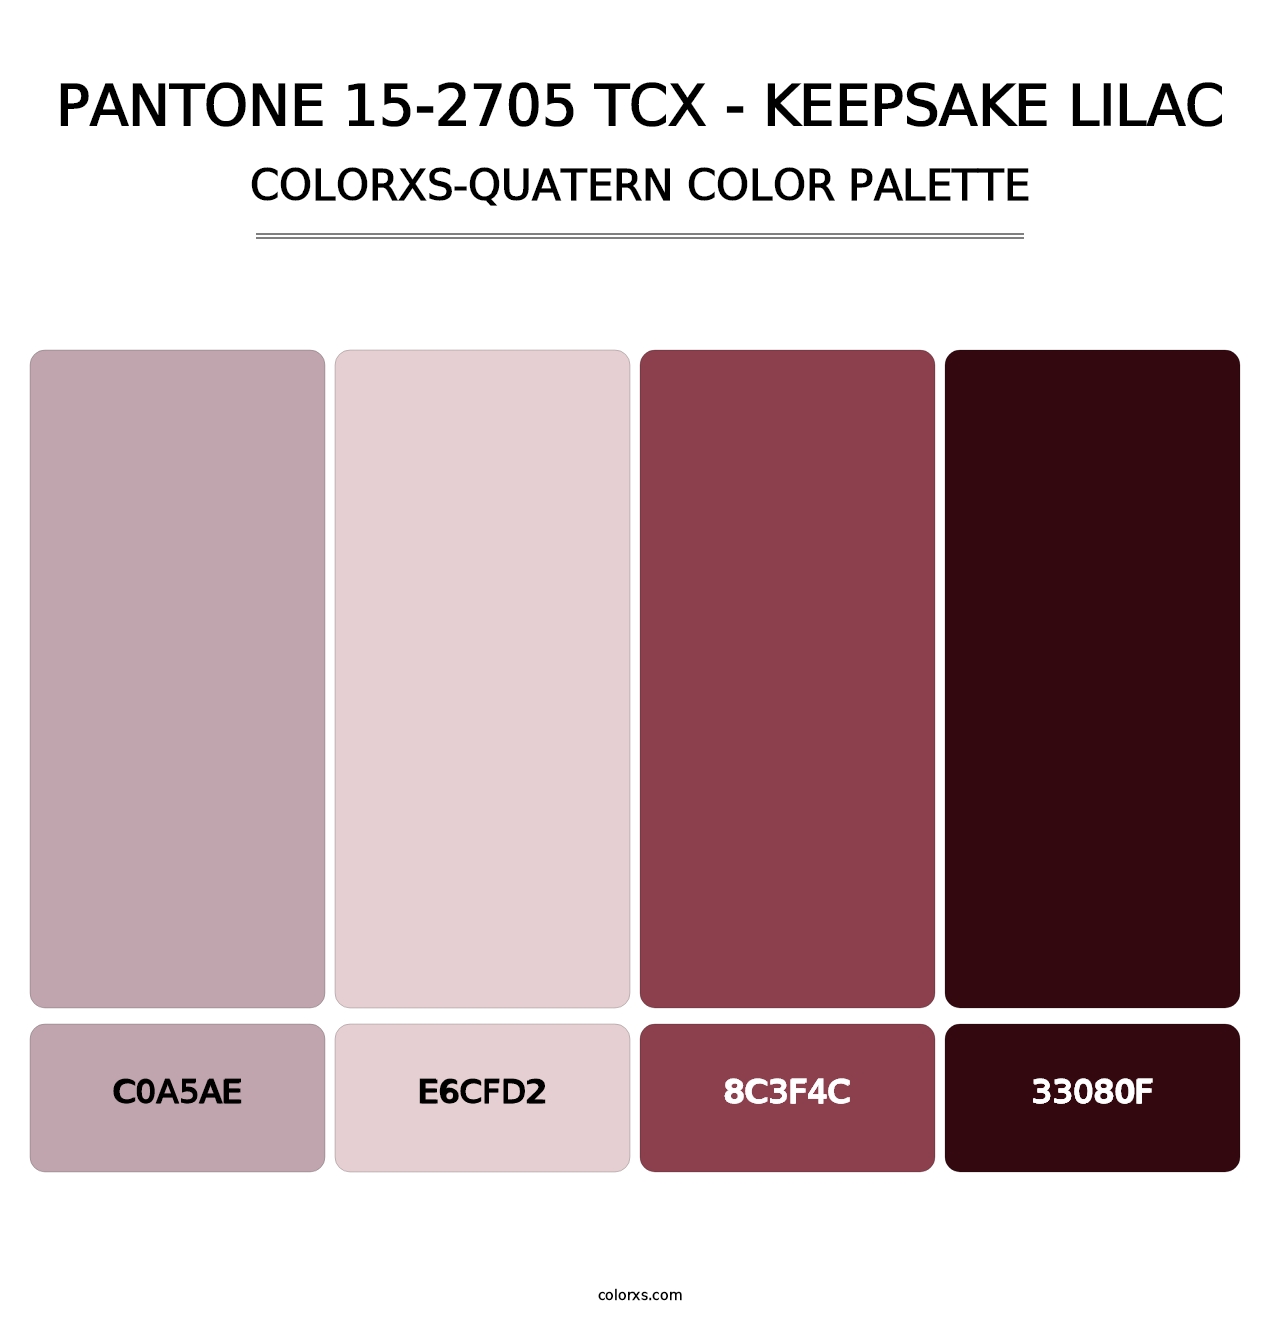 PANTONE 15-2705 TCX - Keepsake Lilac - Colorxs Quatern Palette